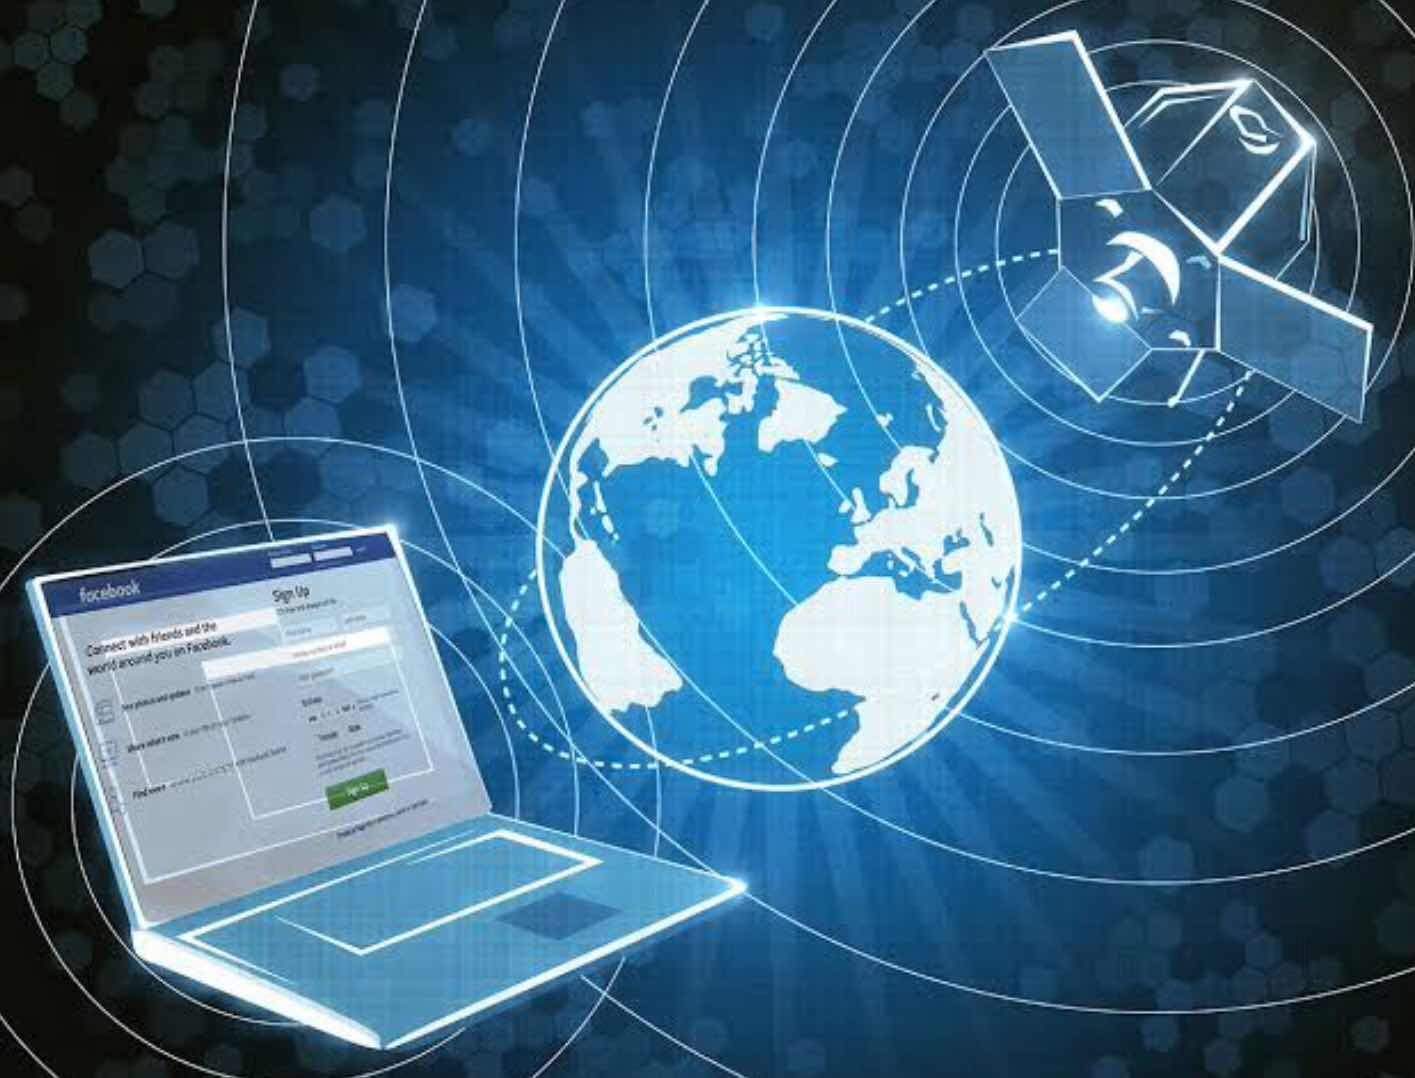 Nepal ranked 112th in global internet speed rankings